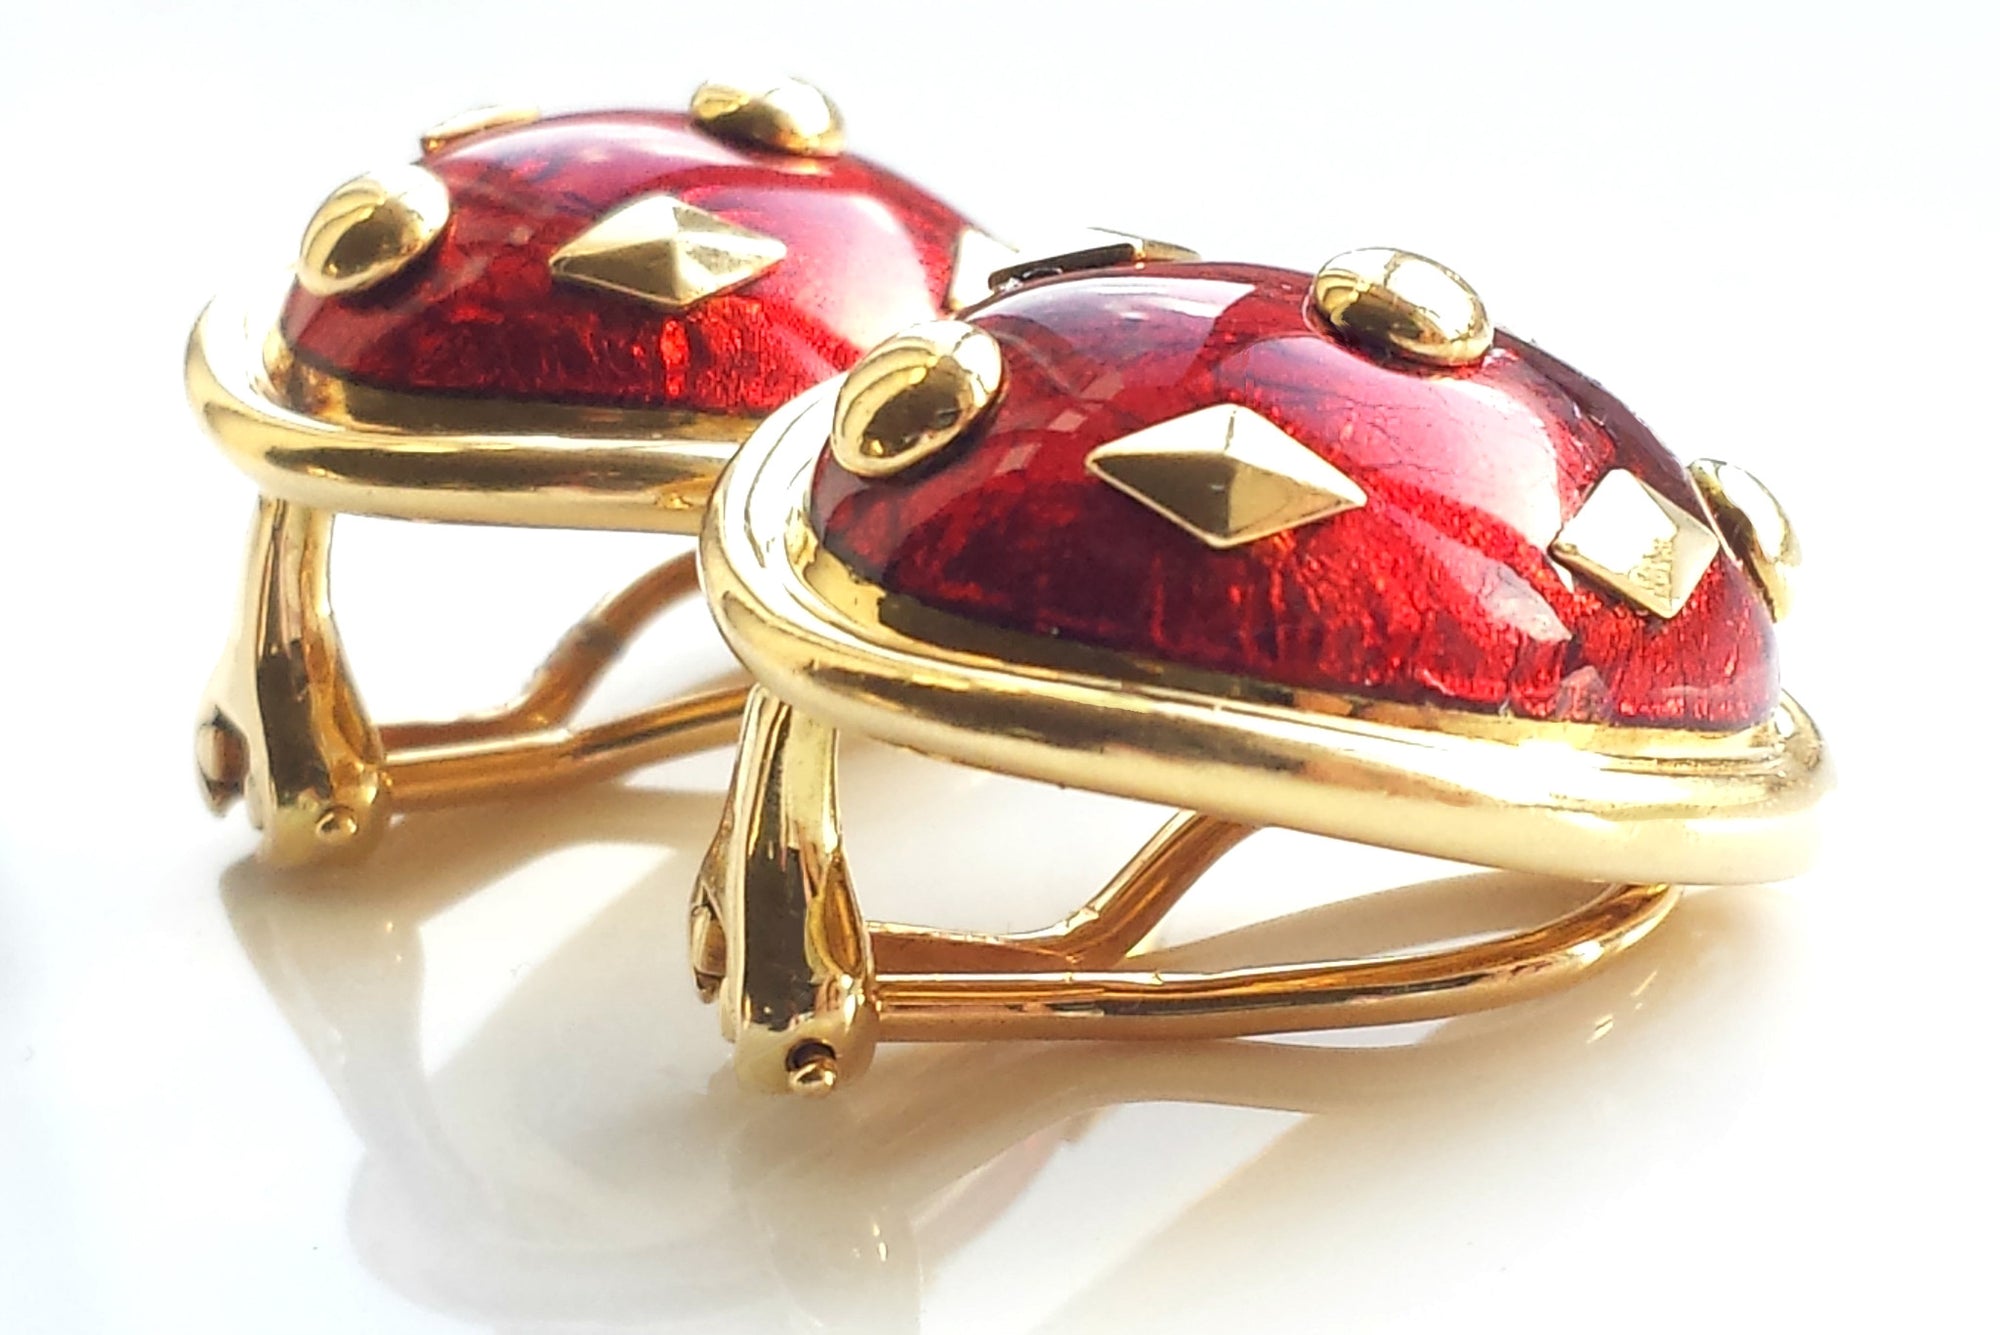 Tiffany & Co. Schlumberger Red Dot Lozenge Enamel Earrings in 18k Yellow Gold